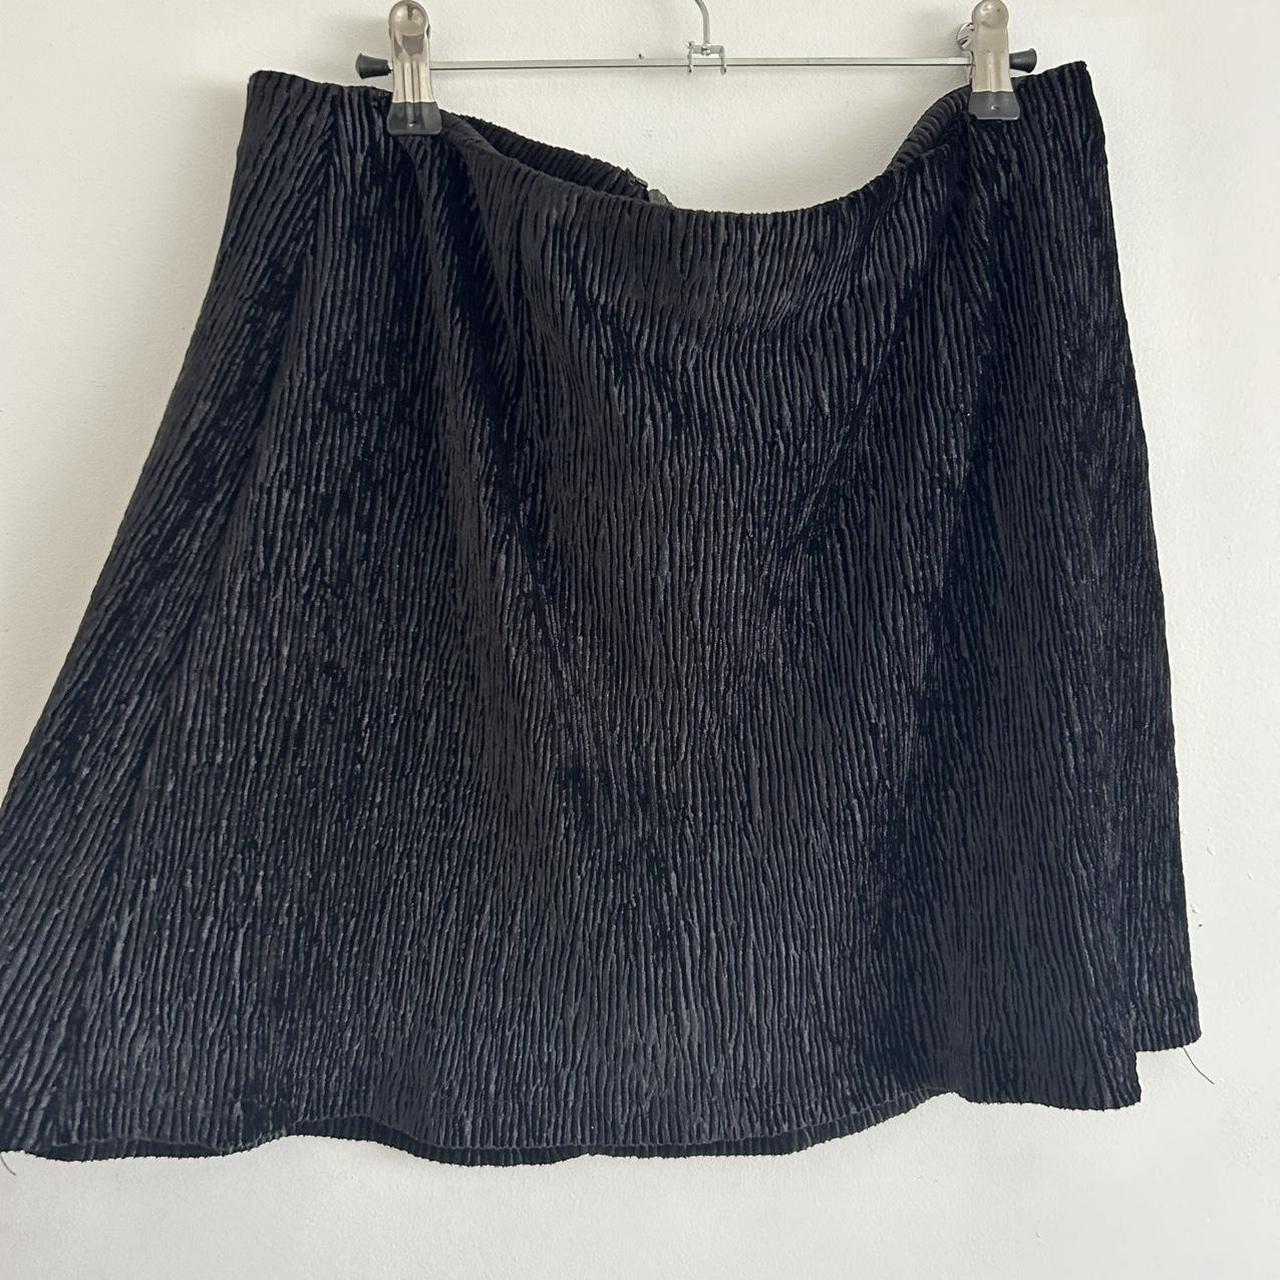 Verge girl mini skirt Velvet material Size 14 - Depop